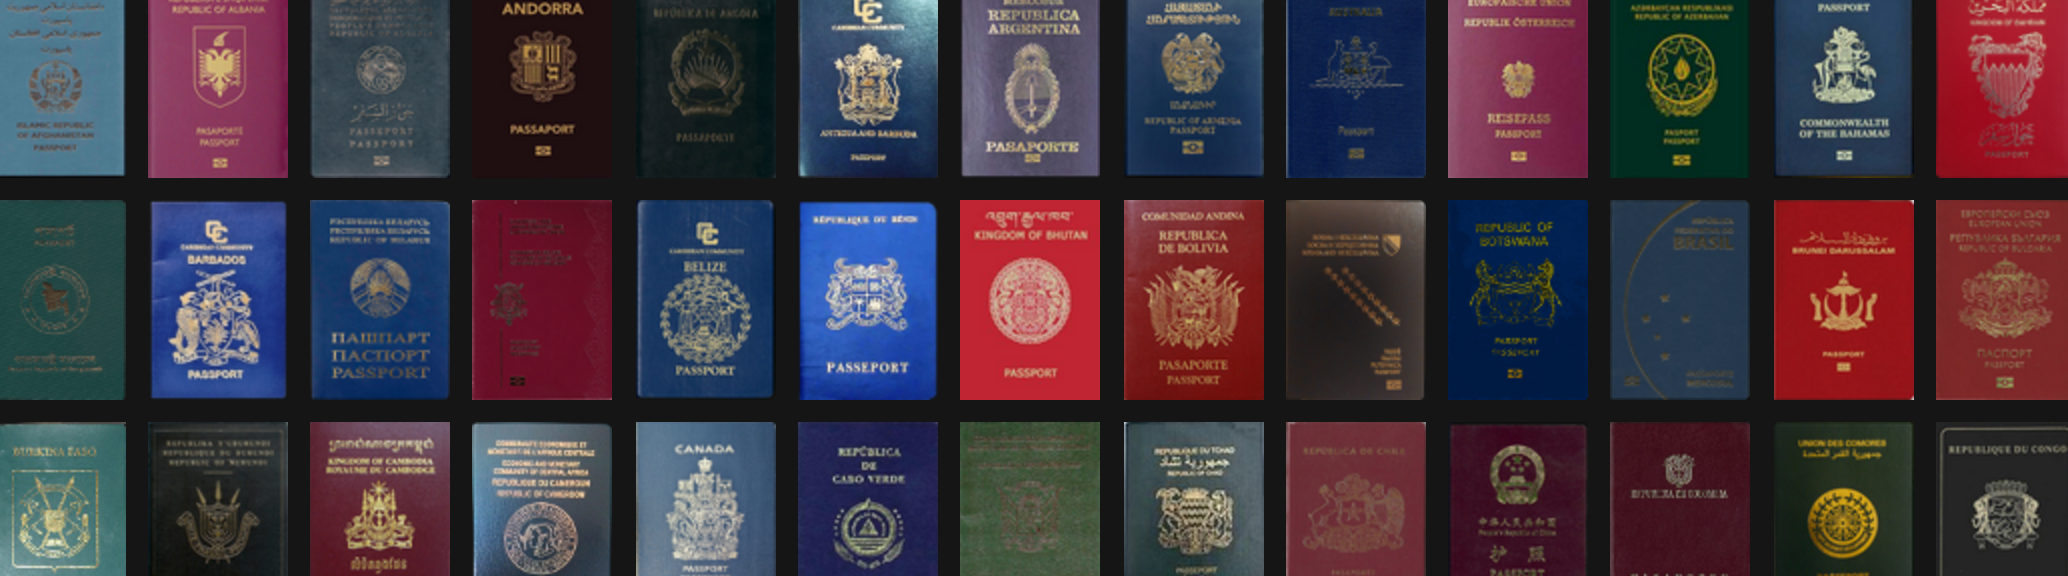 Passport Index 2016